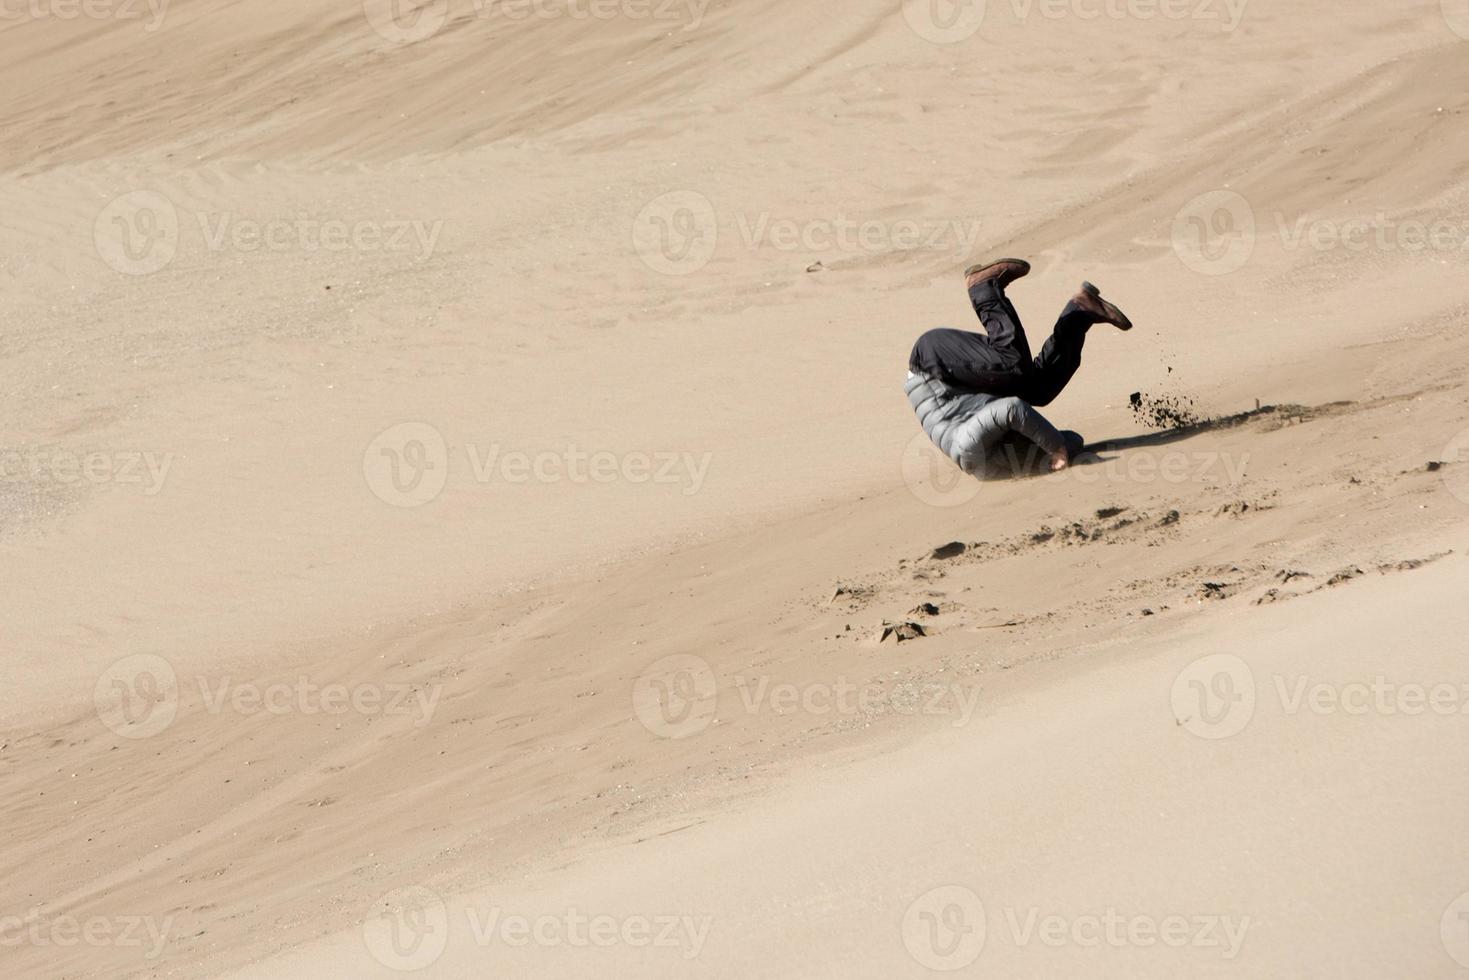 homme roulant sur le sable dunes photo